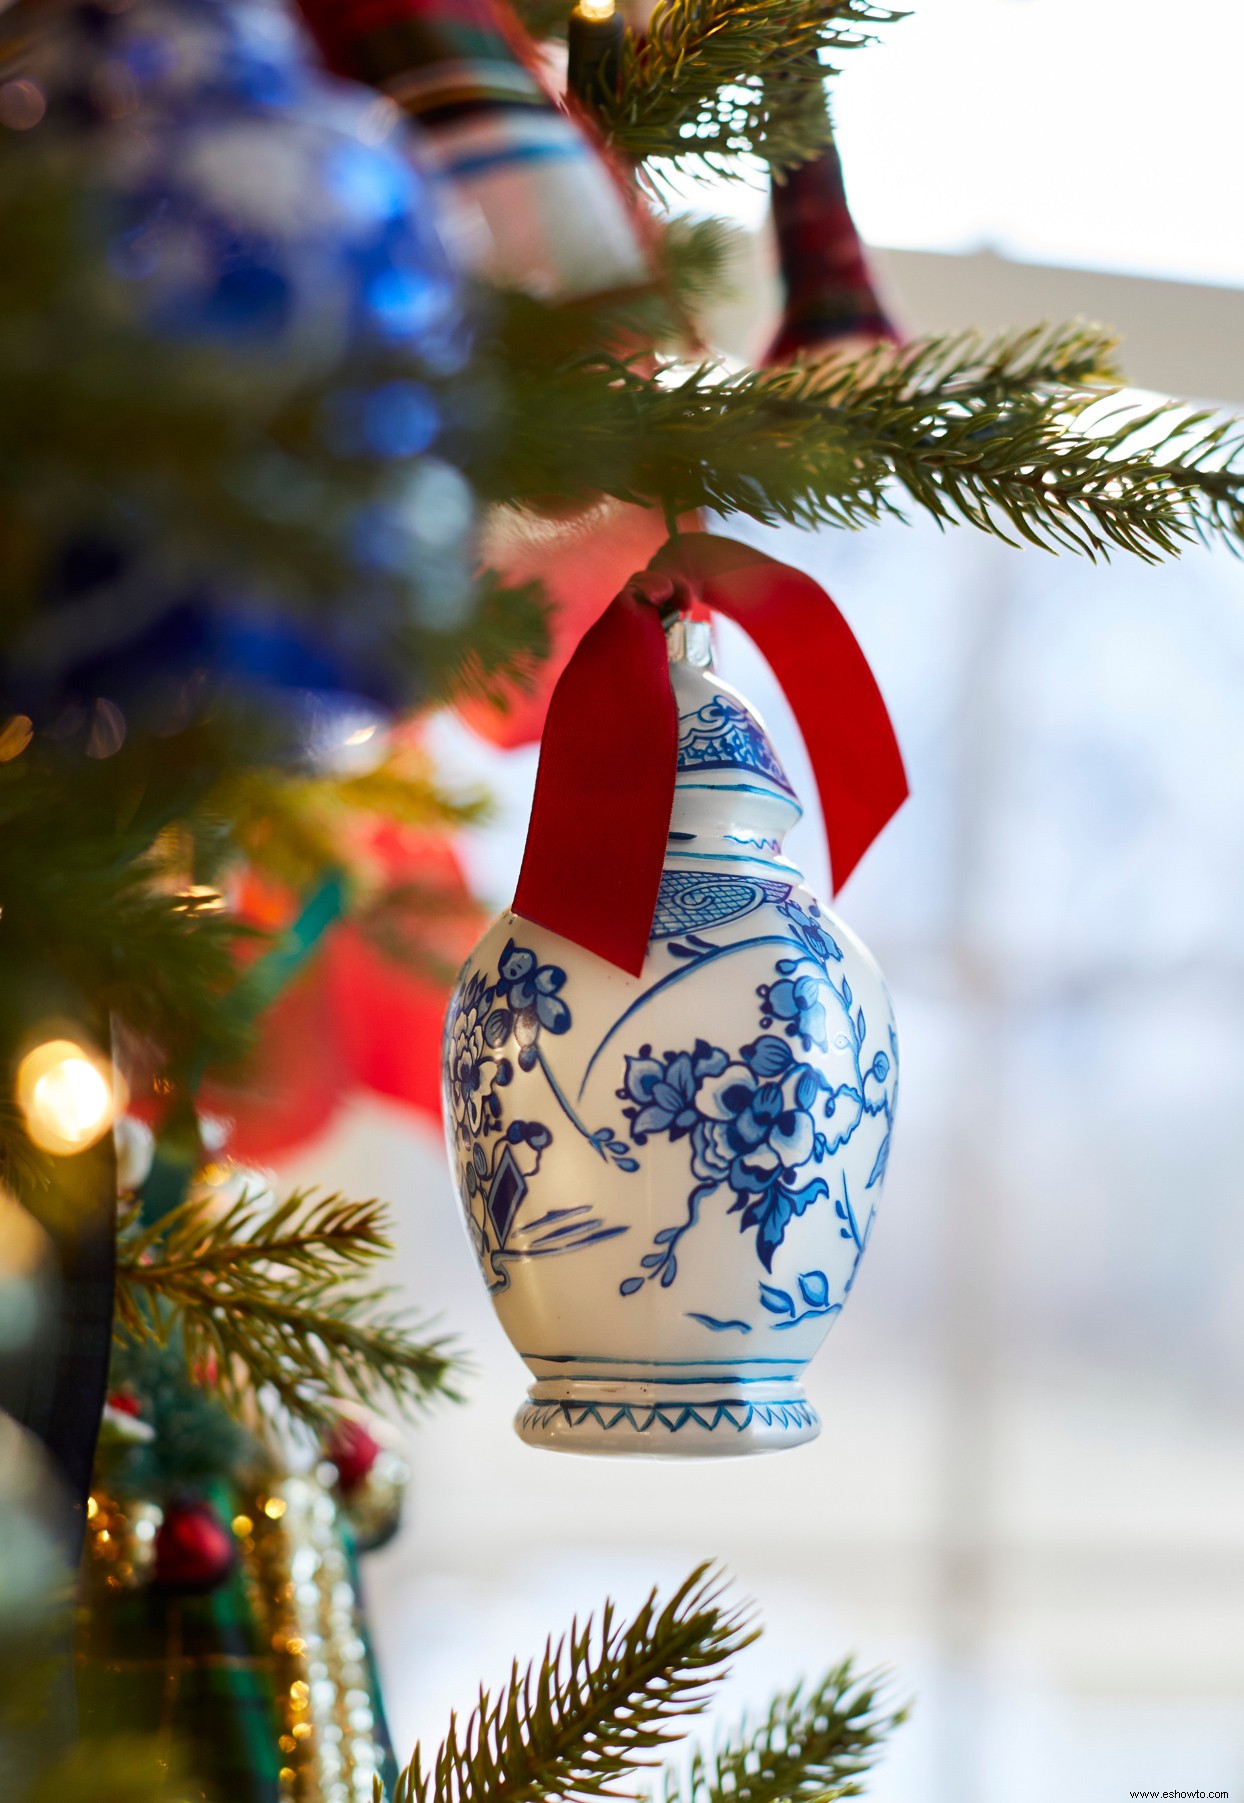 Esta casa de ensueño brilla con tonos de azul y espíritu navideño 